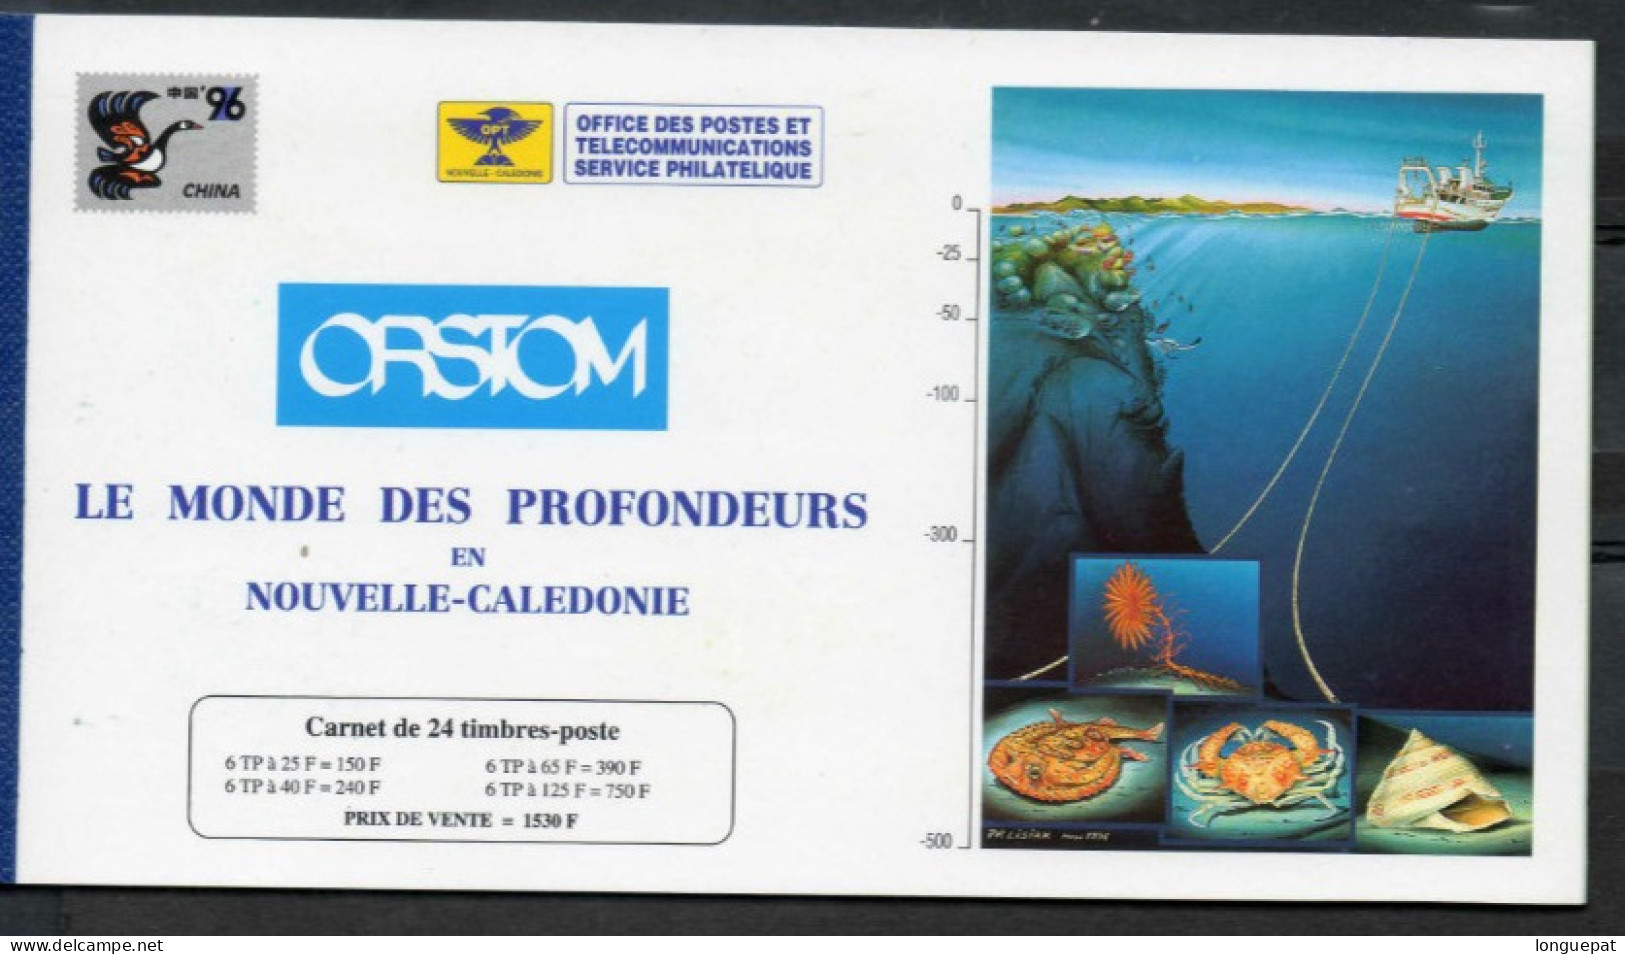 Nelle CALEDONIE : Faune Marine : Poisson, Coquillage, Crabe, Etc - "China 96" Exposition Philatélique - - Cuadernillos